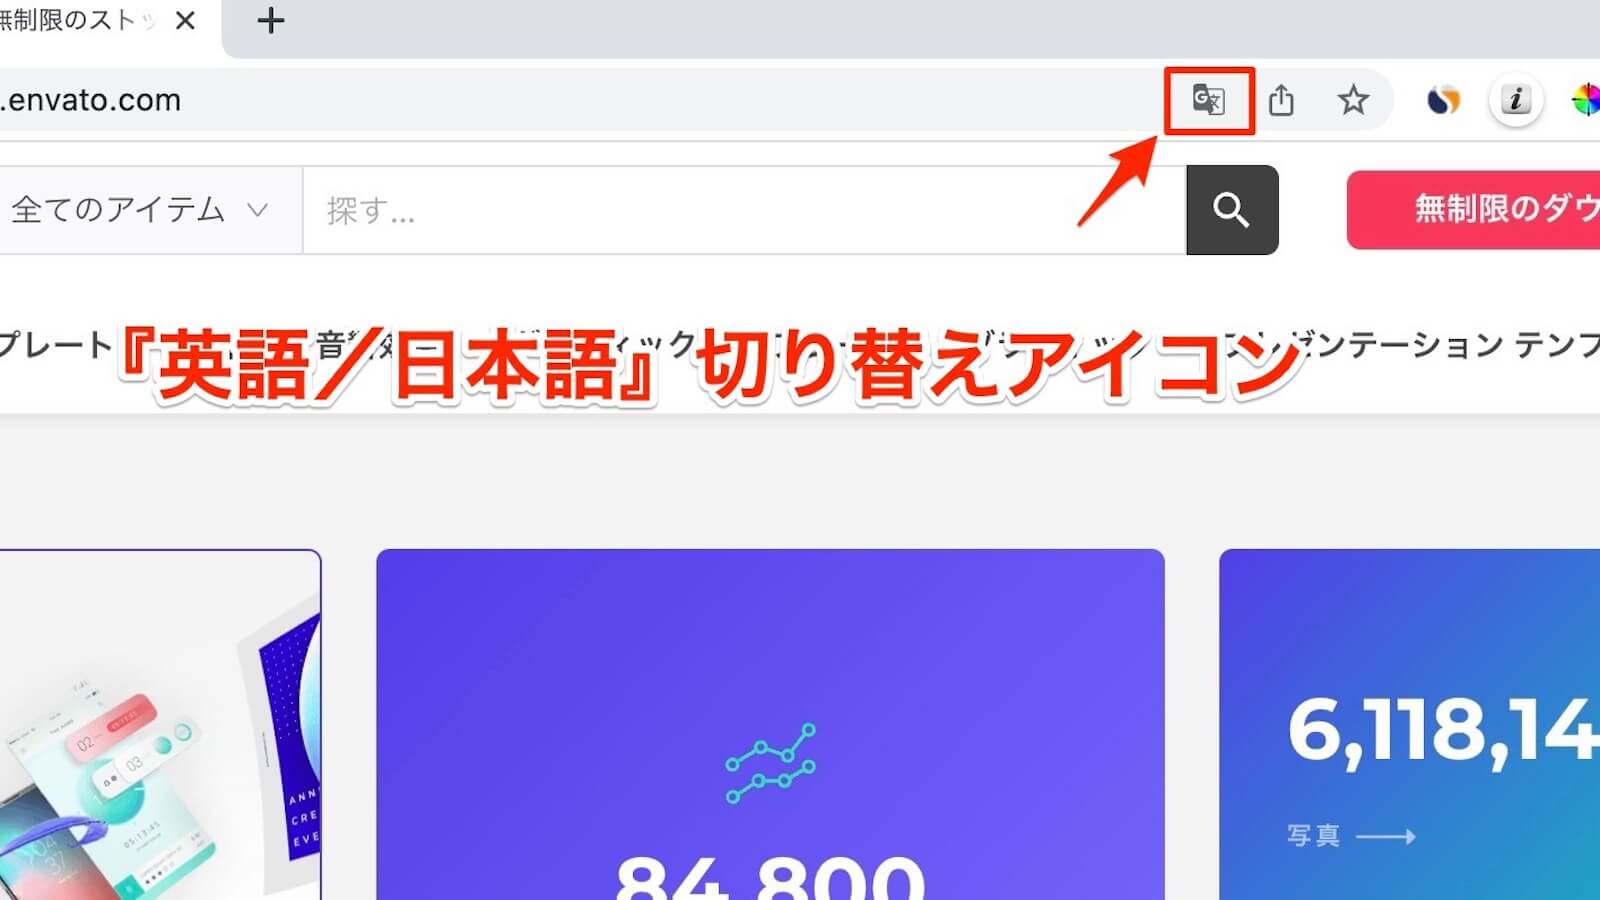 Chrome English/Japanese switch icon